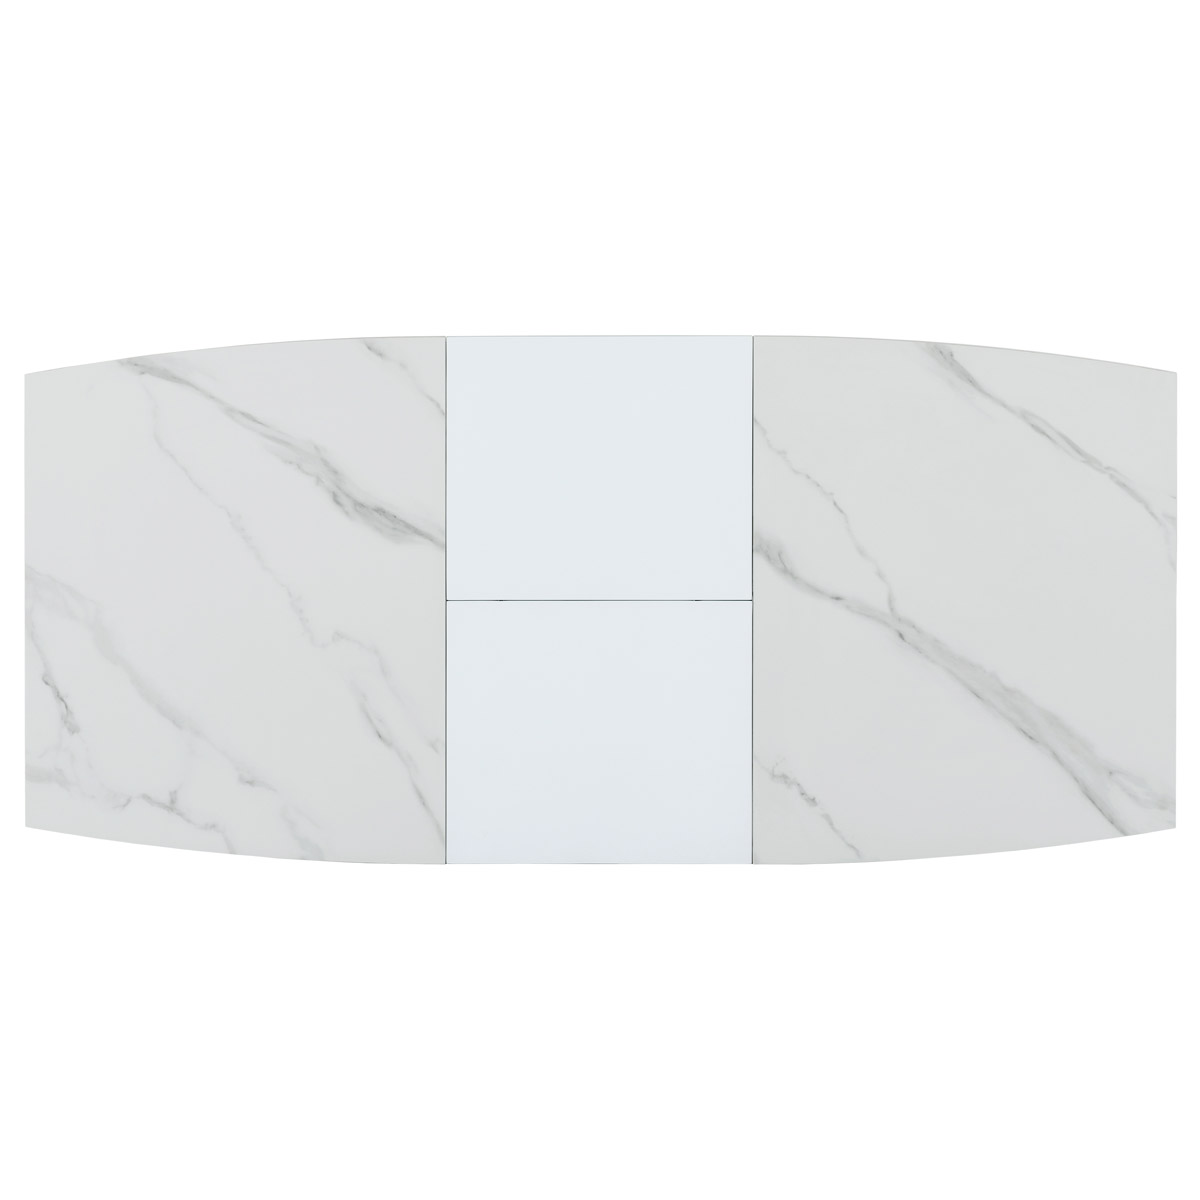 Jídelní stůl 120+40x70 cm, keramická deska bílý mramor, MDF, bílý matný lak - HT-424M WT